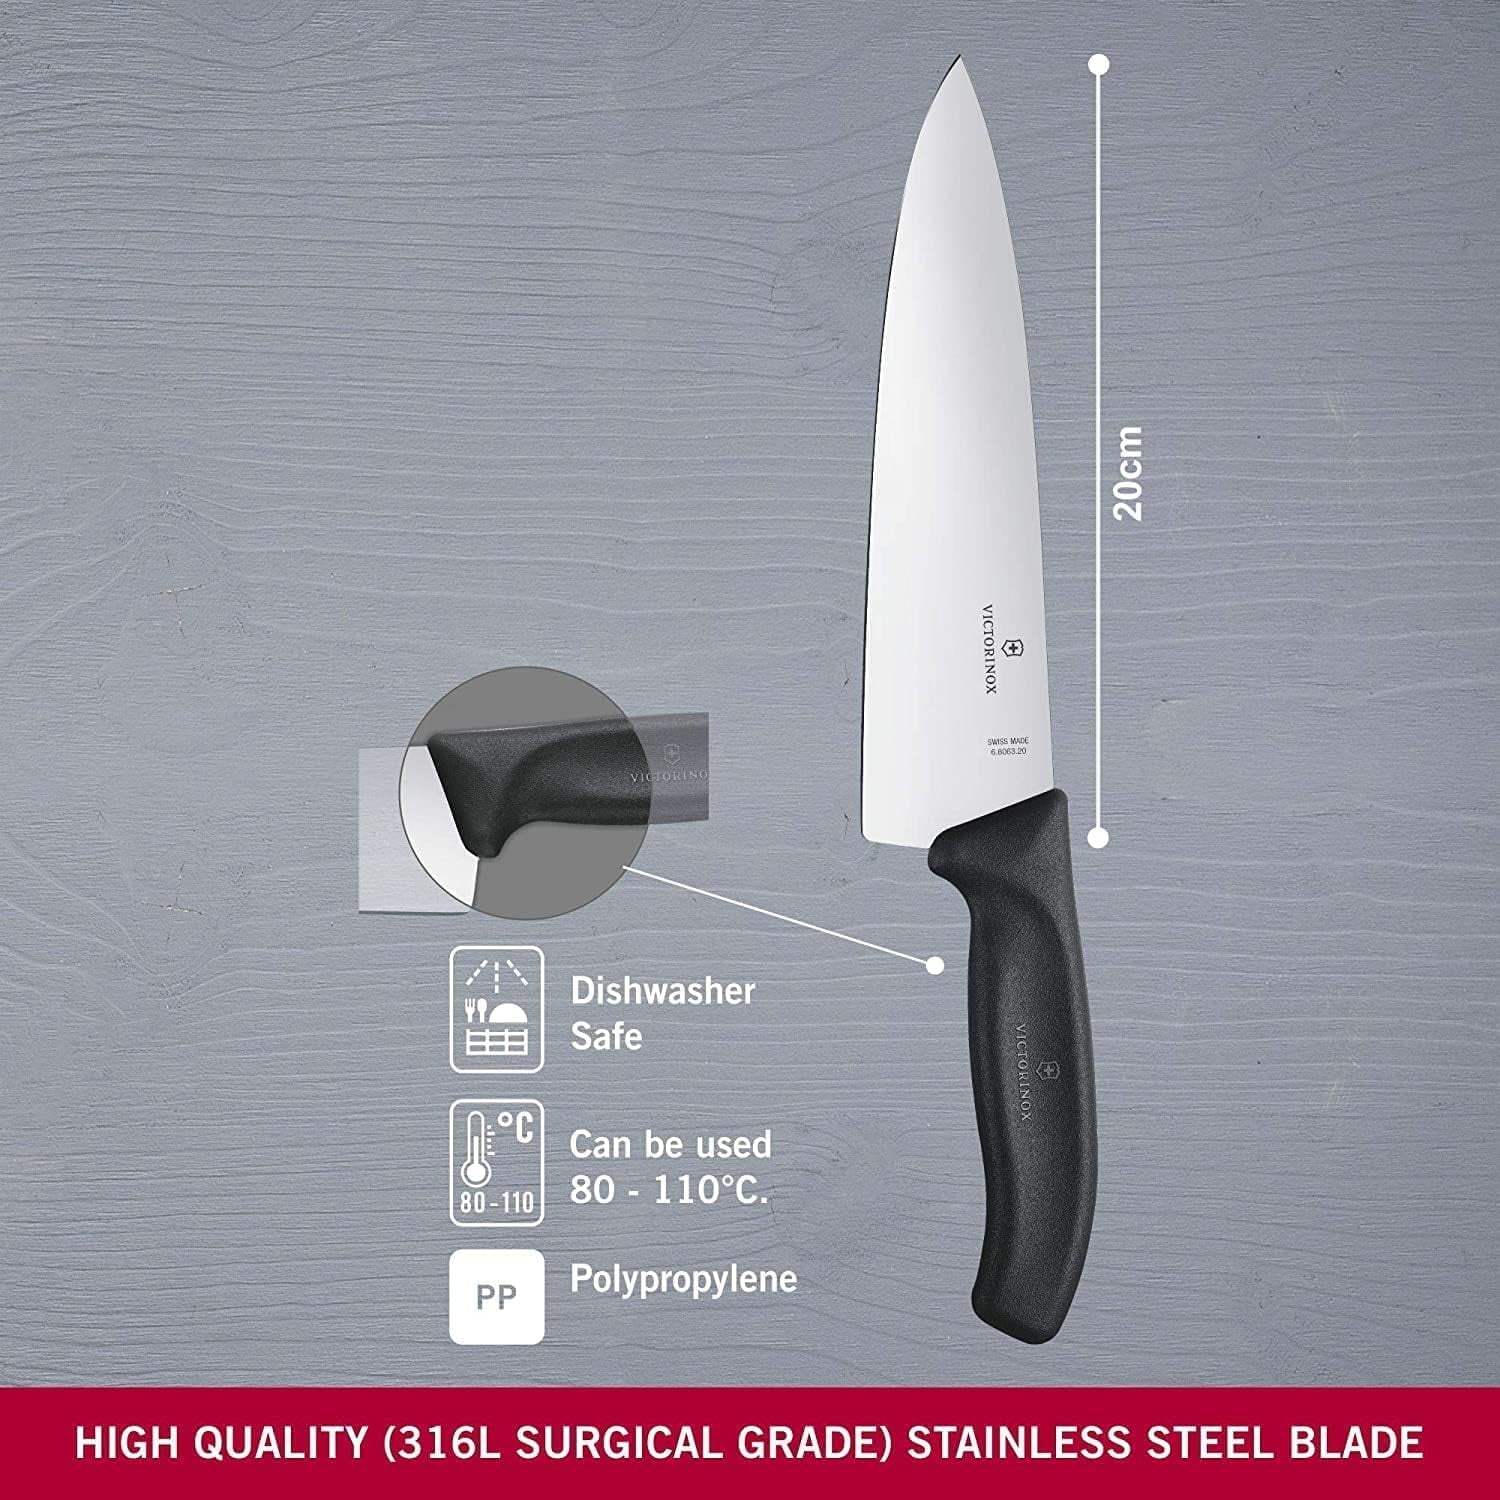 Couteau d´office Swiss classique 8 cm noir - Victorinox